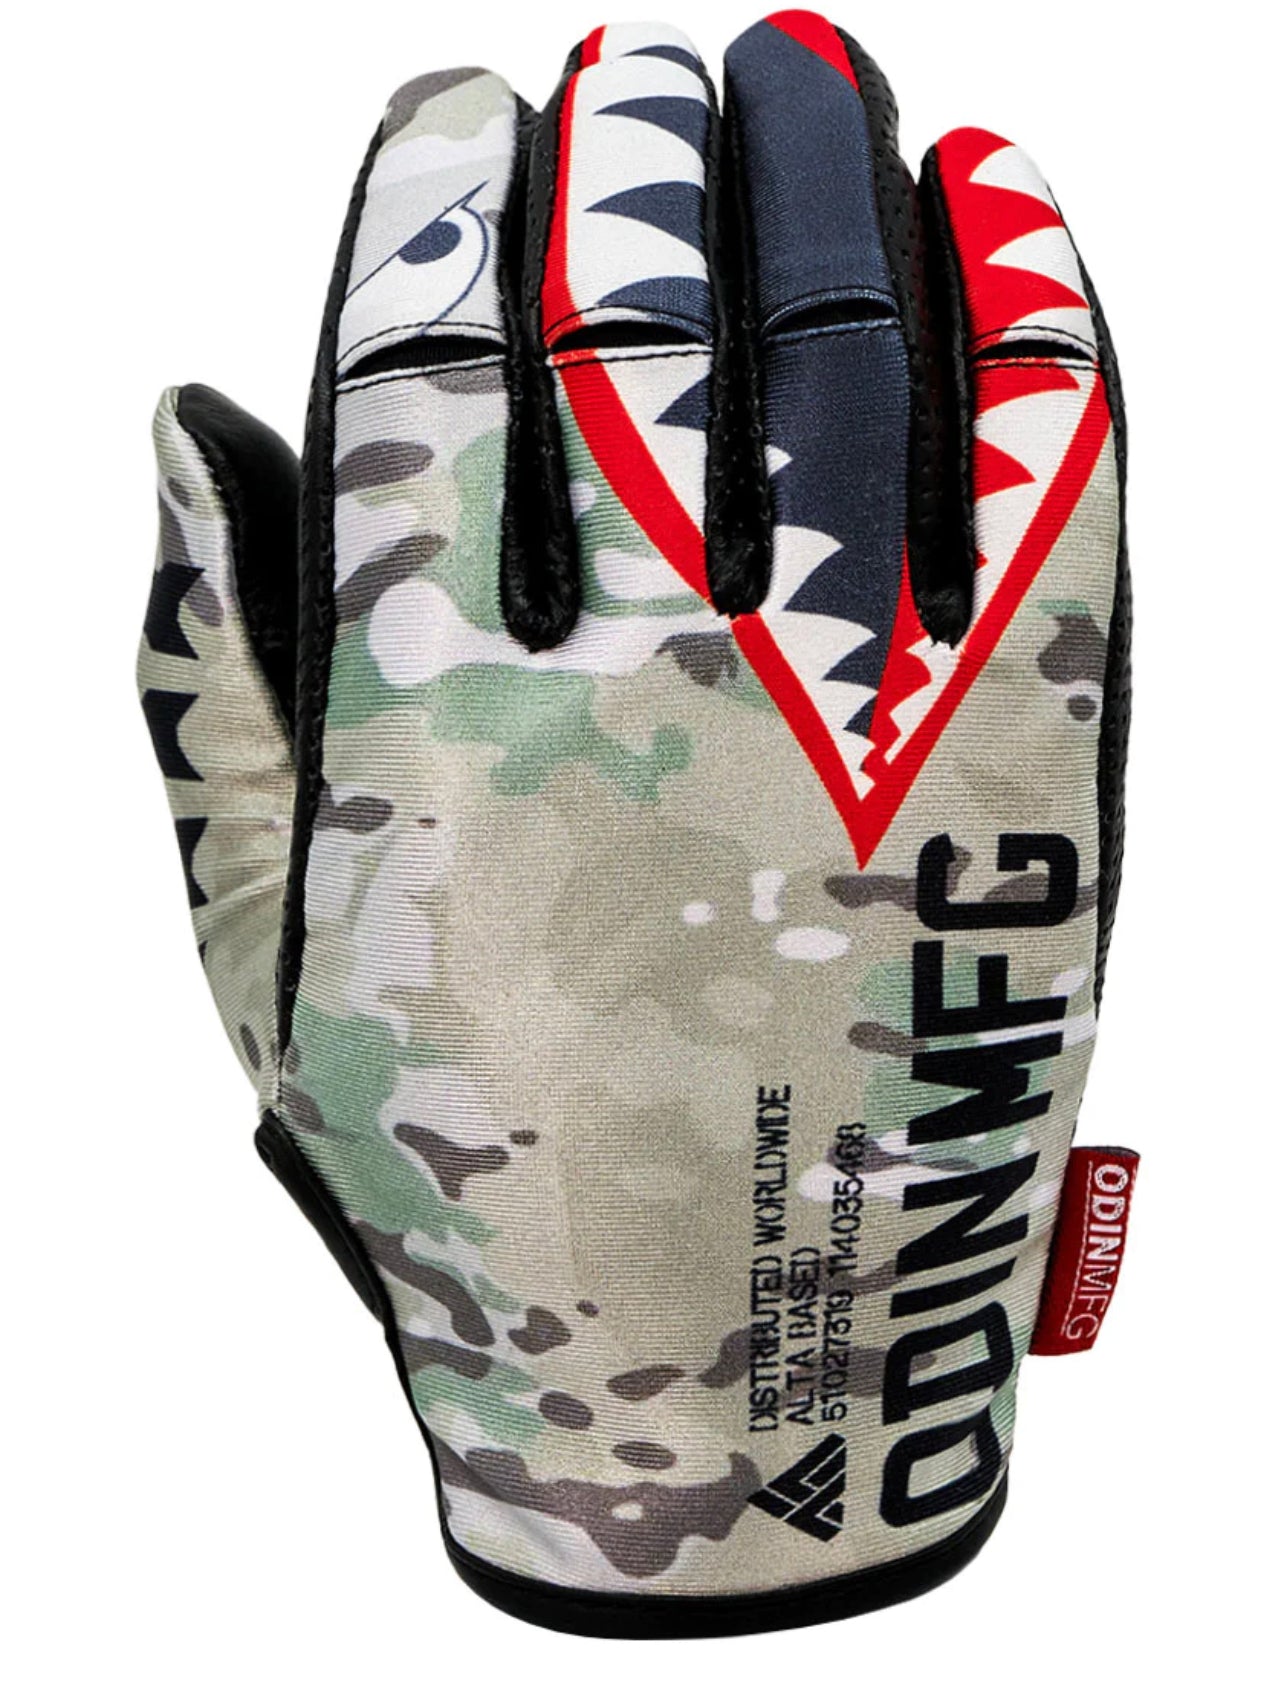 Odin Spitfire SMX Gloves